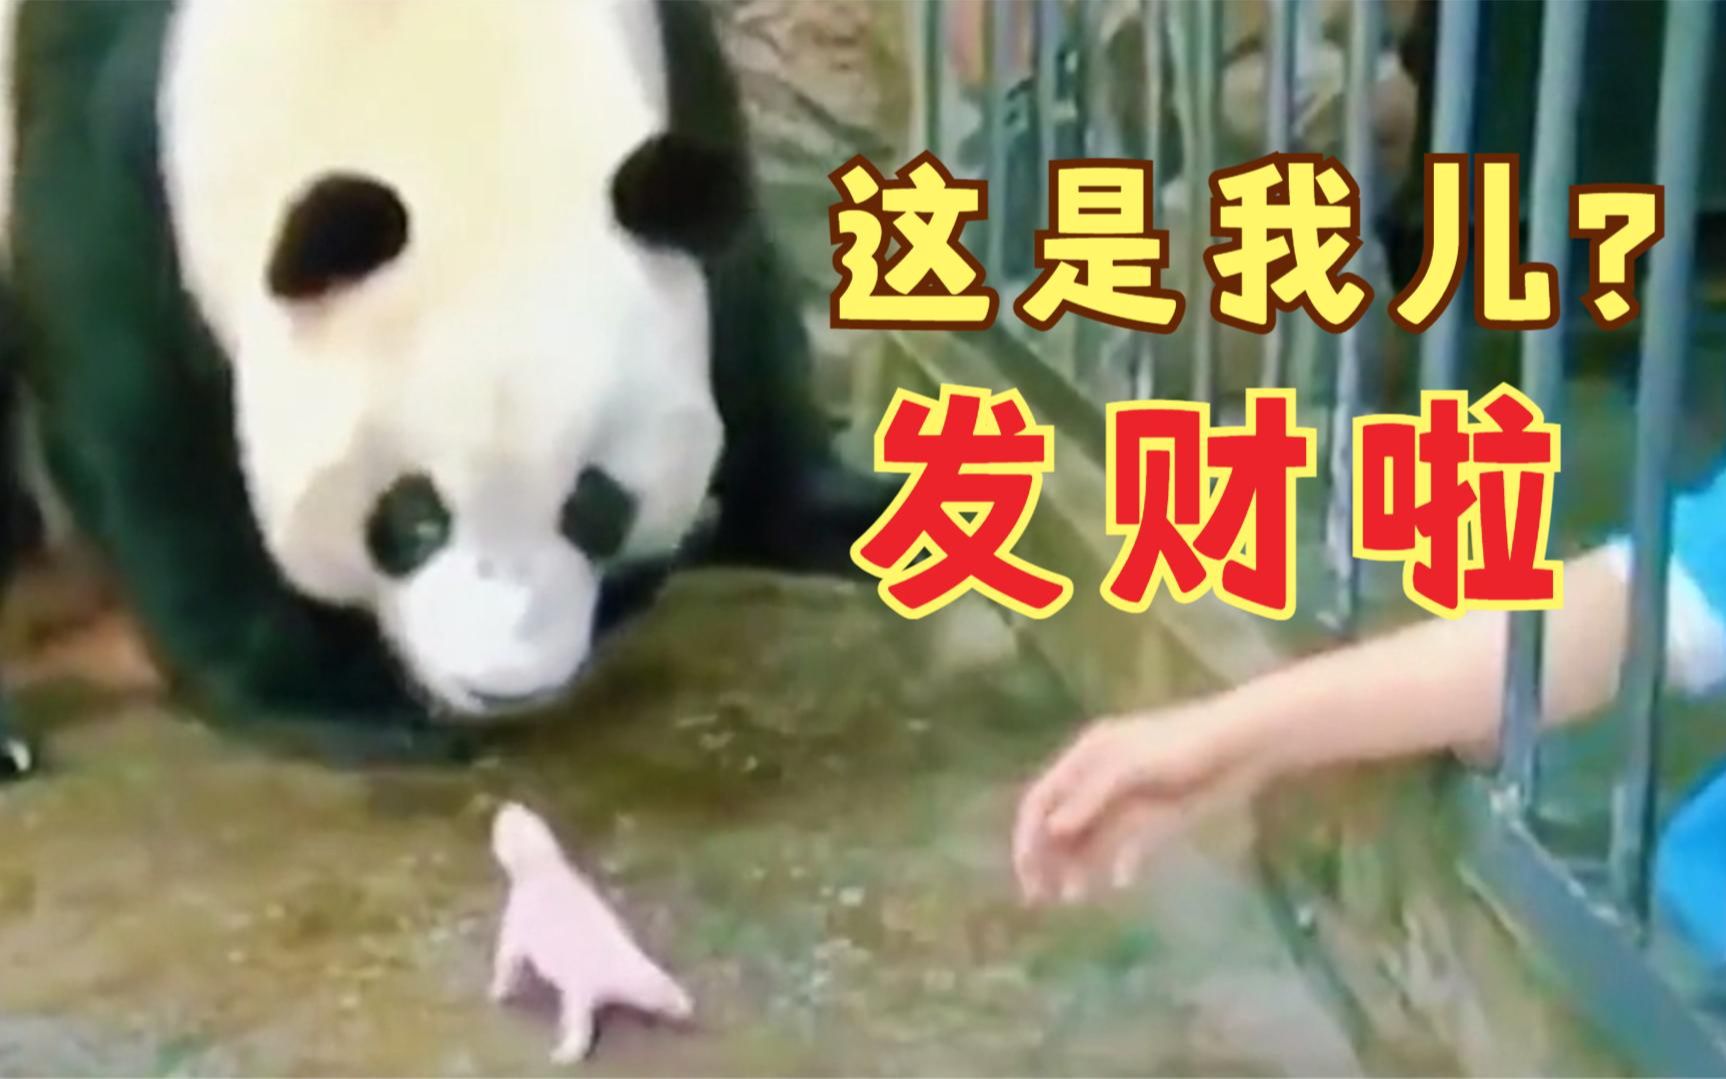 大熊猫：这是我的儿子吗？怎么这么小一只